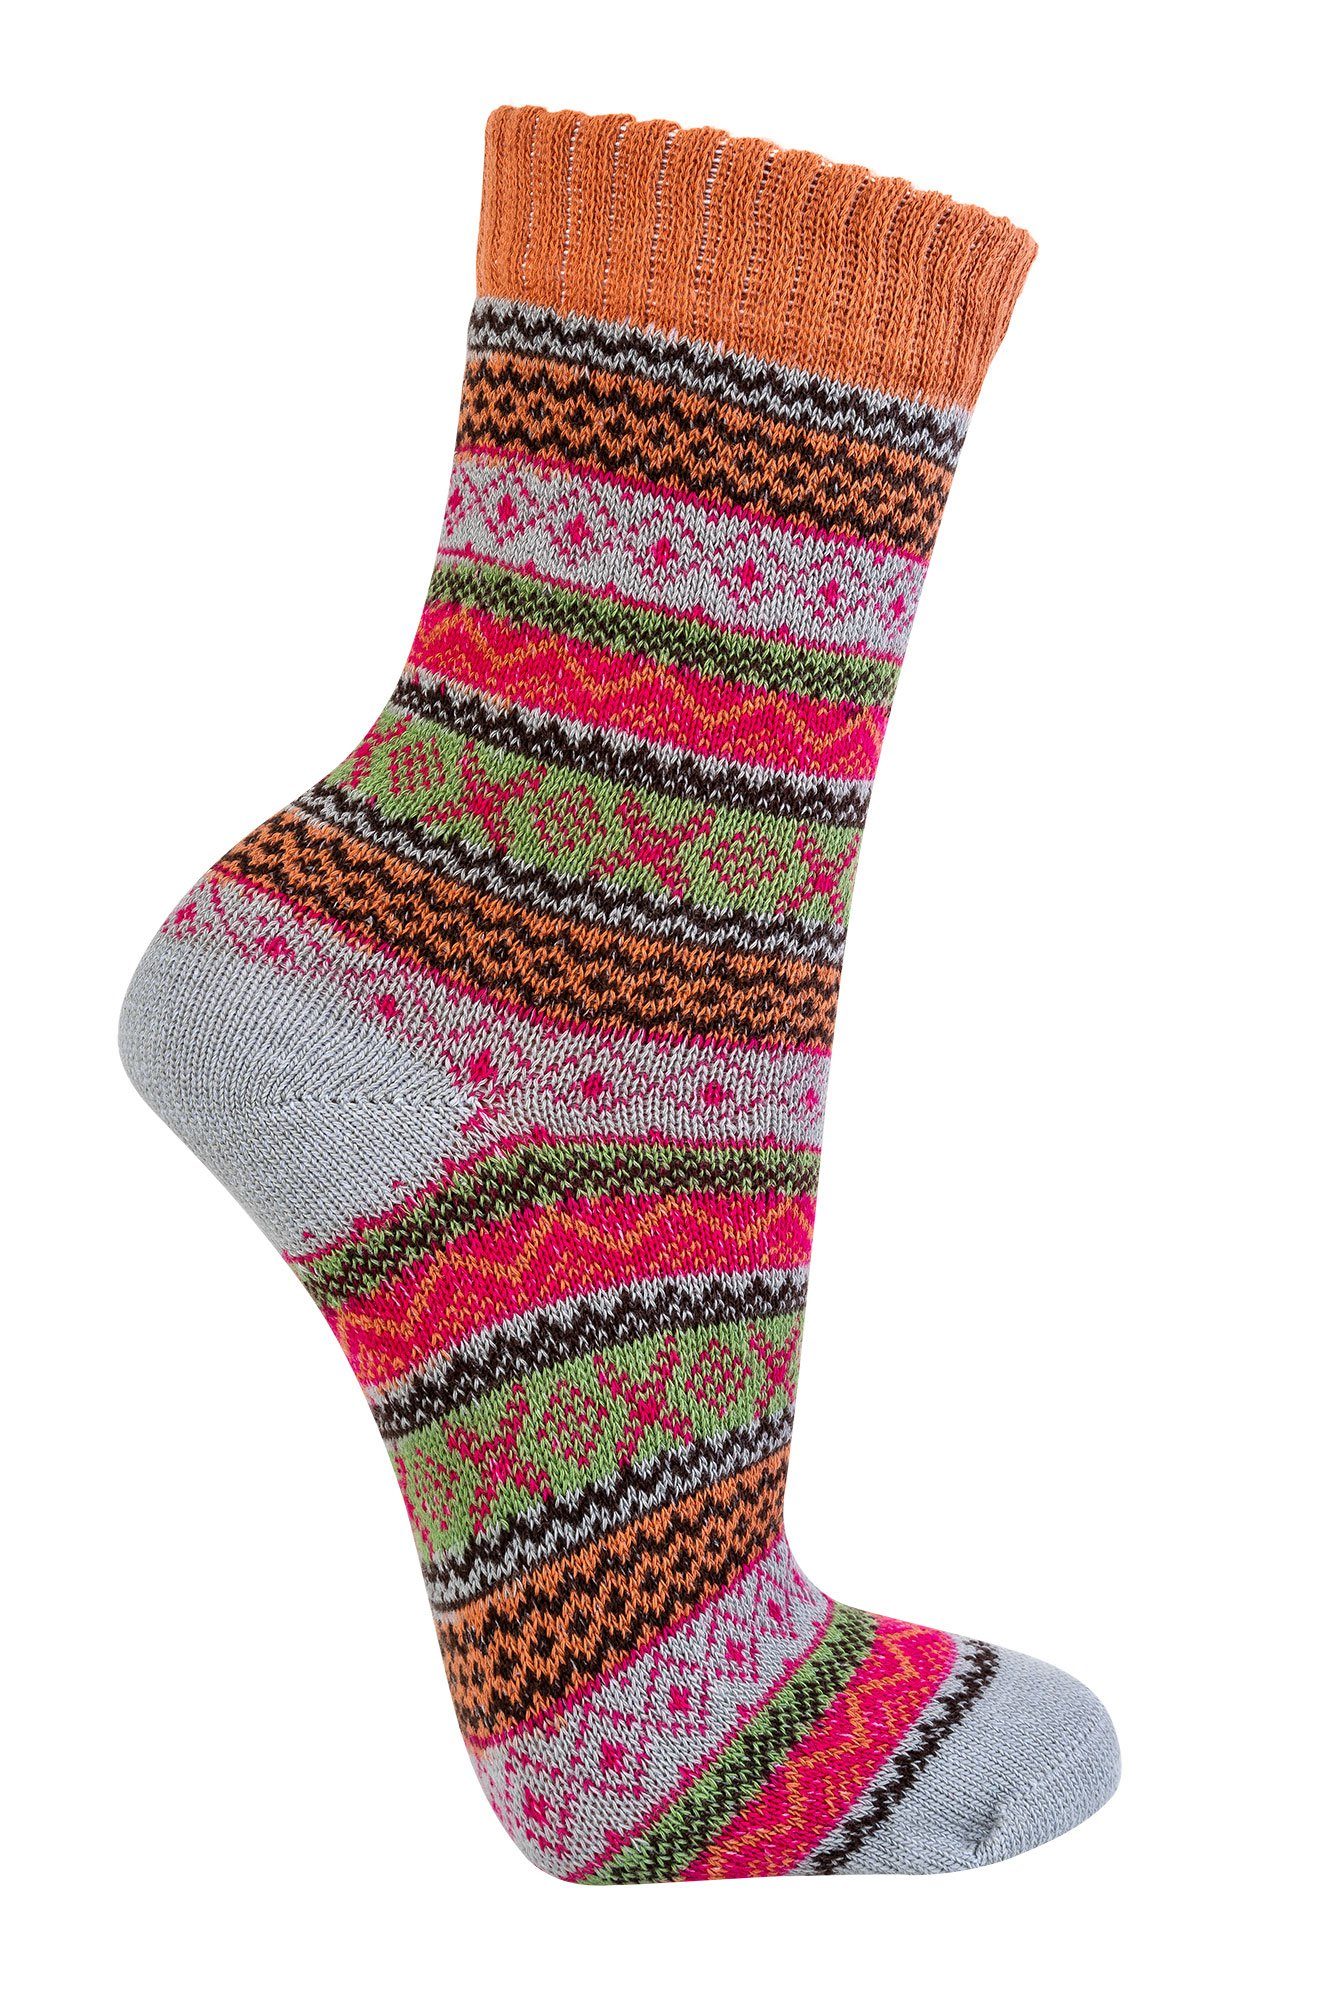 Wowerat Freizeitsocken Bunte Norweger Socken mit mit (3 schönem Paar) Hygge Muster Baumwolle 90